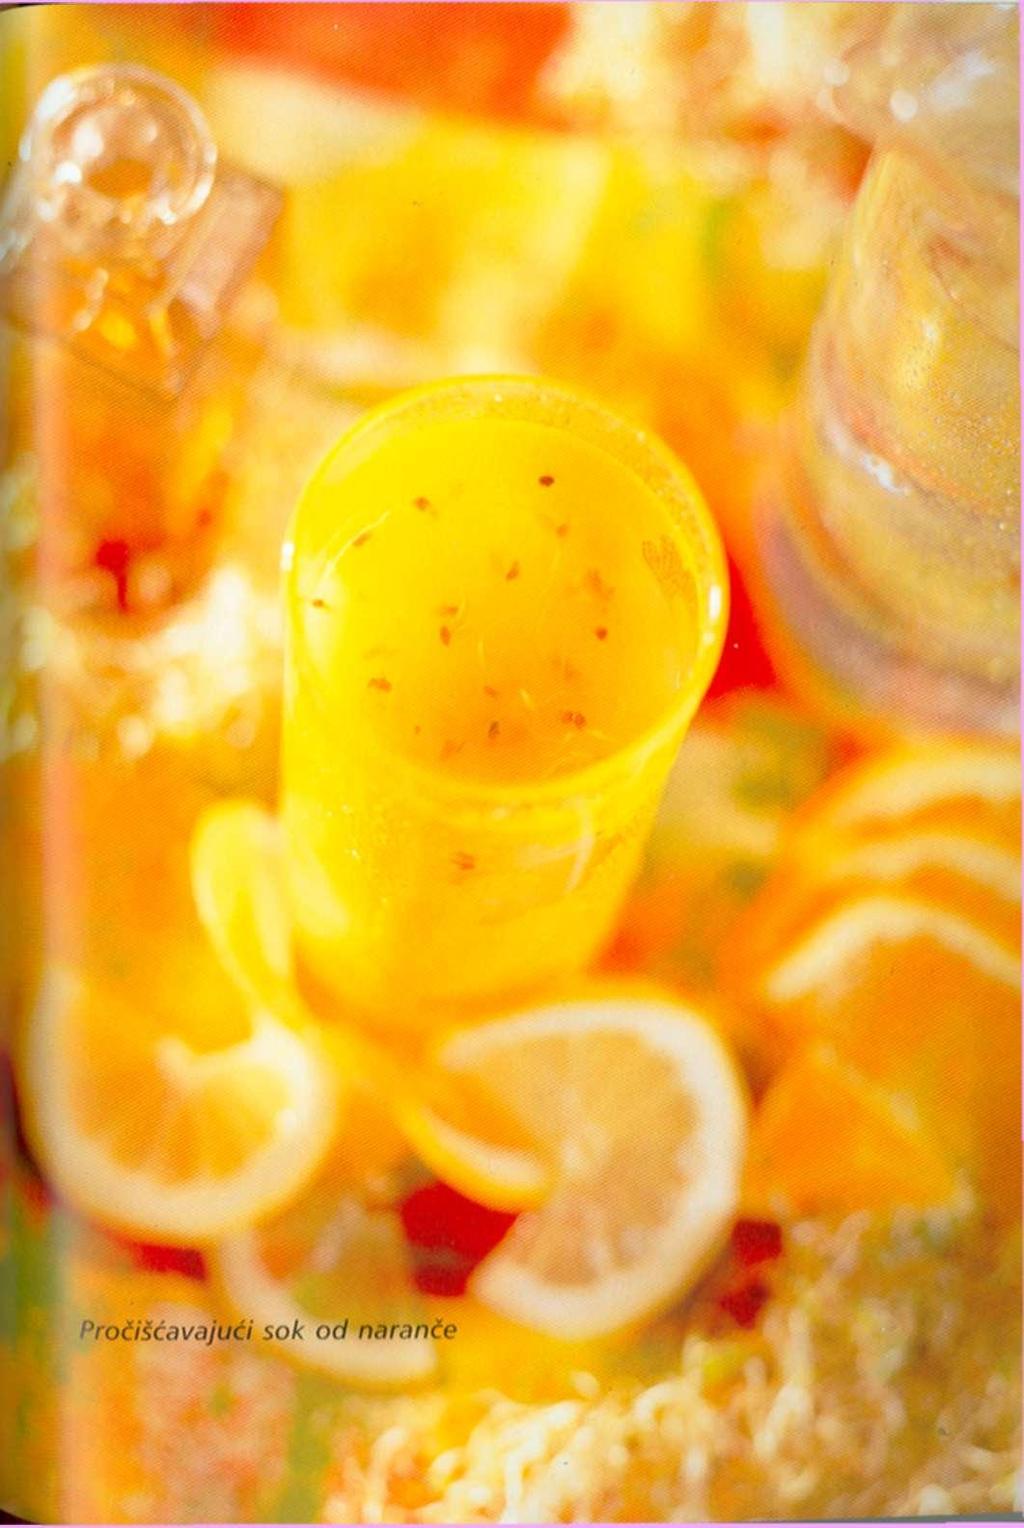 Mozaik od malina cvjetovi hibiskusa prženi korijen cikorije ribana kora naranče suho voće u prahu (malina, kruška i jabuka) Pročišćavajući sok od naranče limun i naranča sok od klica lucerne